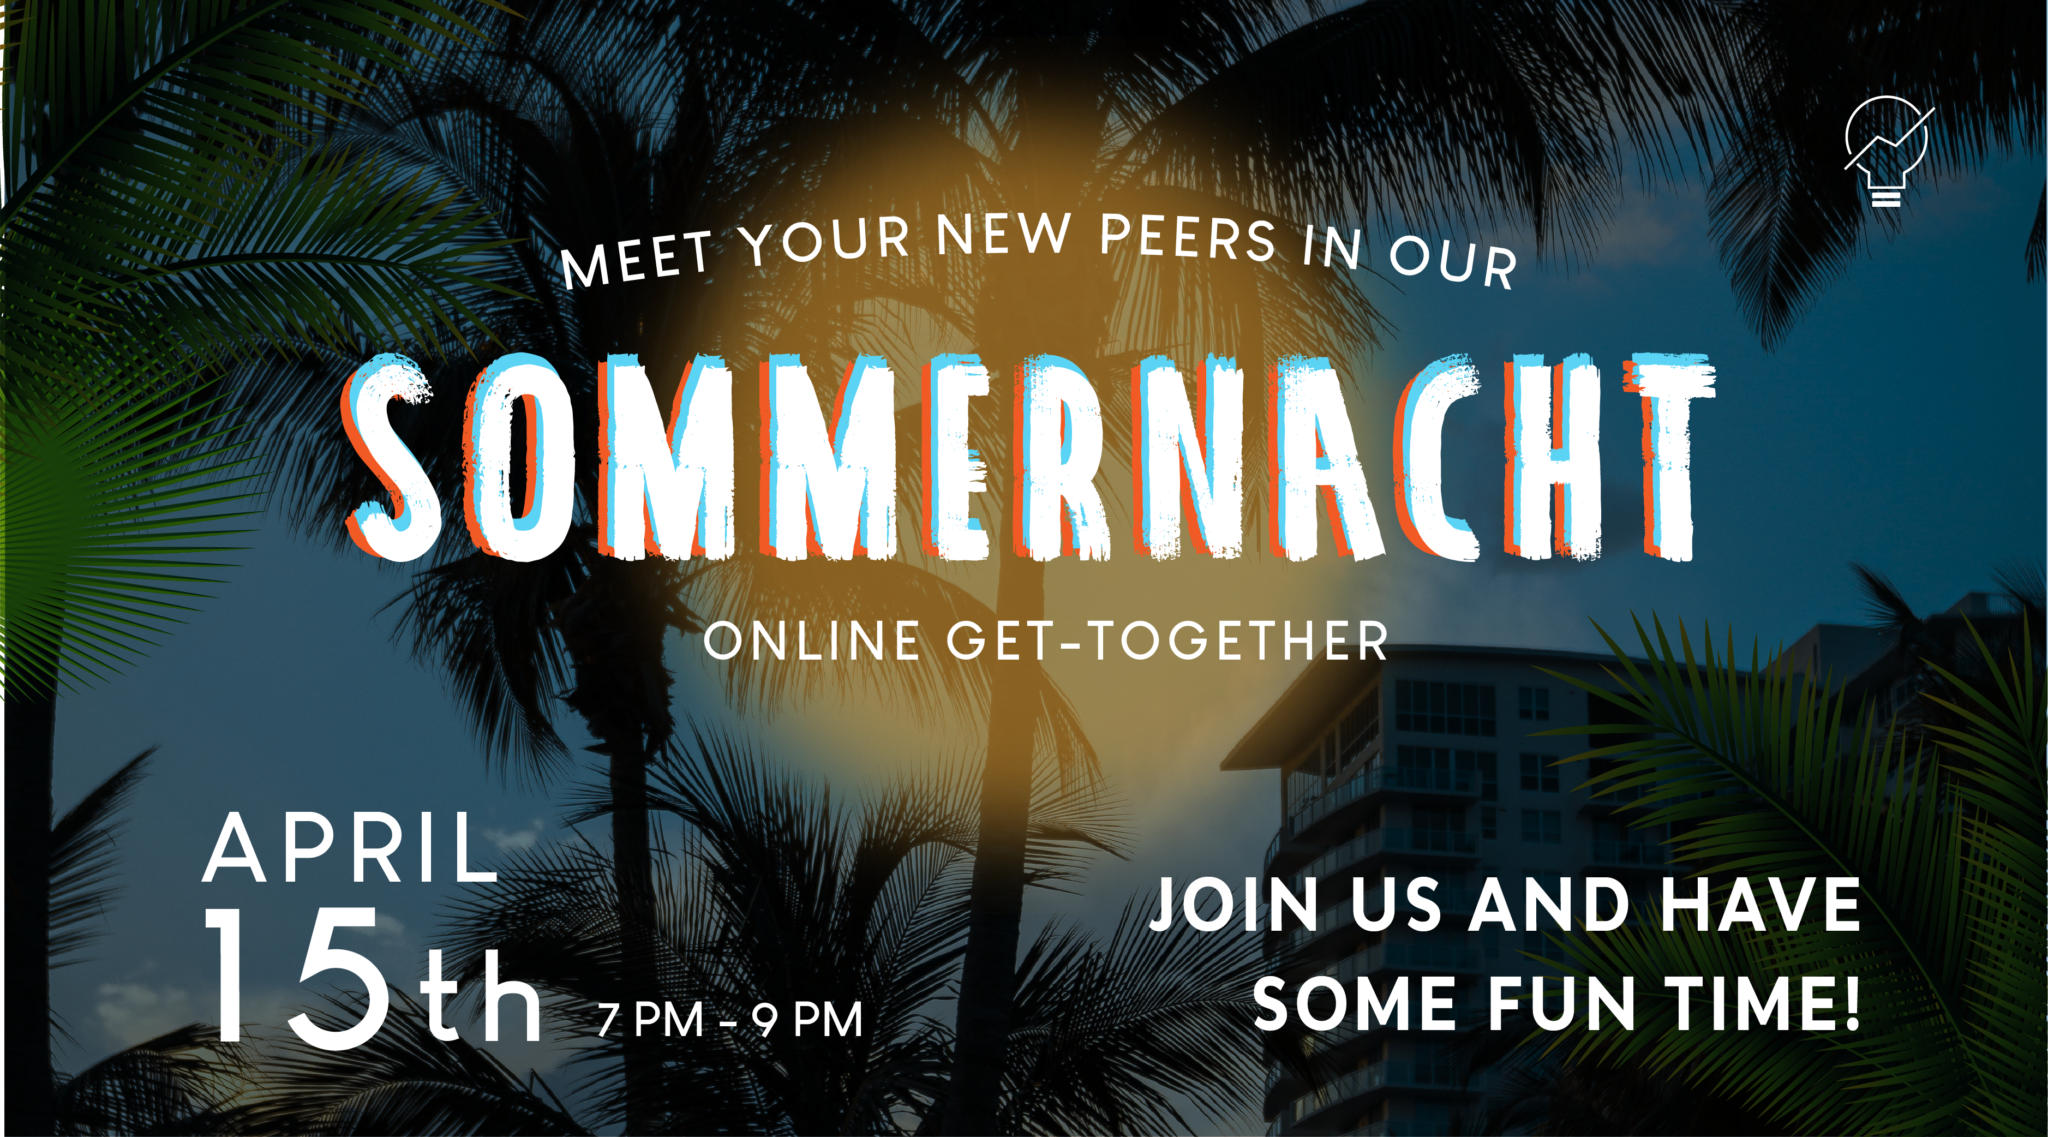 Sommernacht Online Get-together